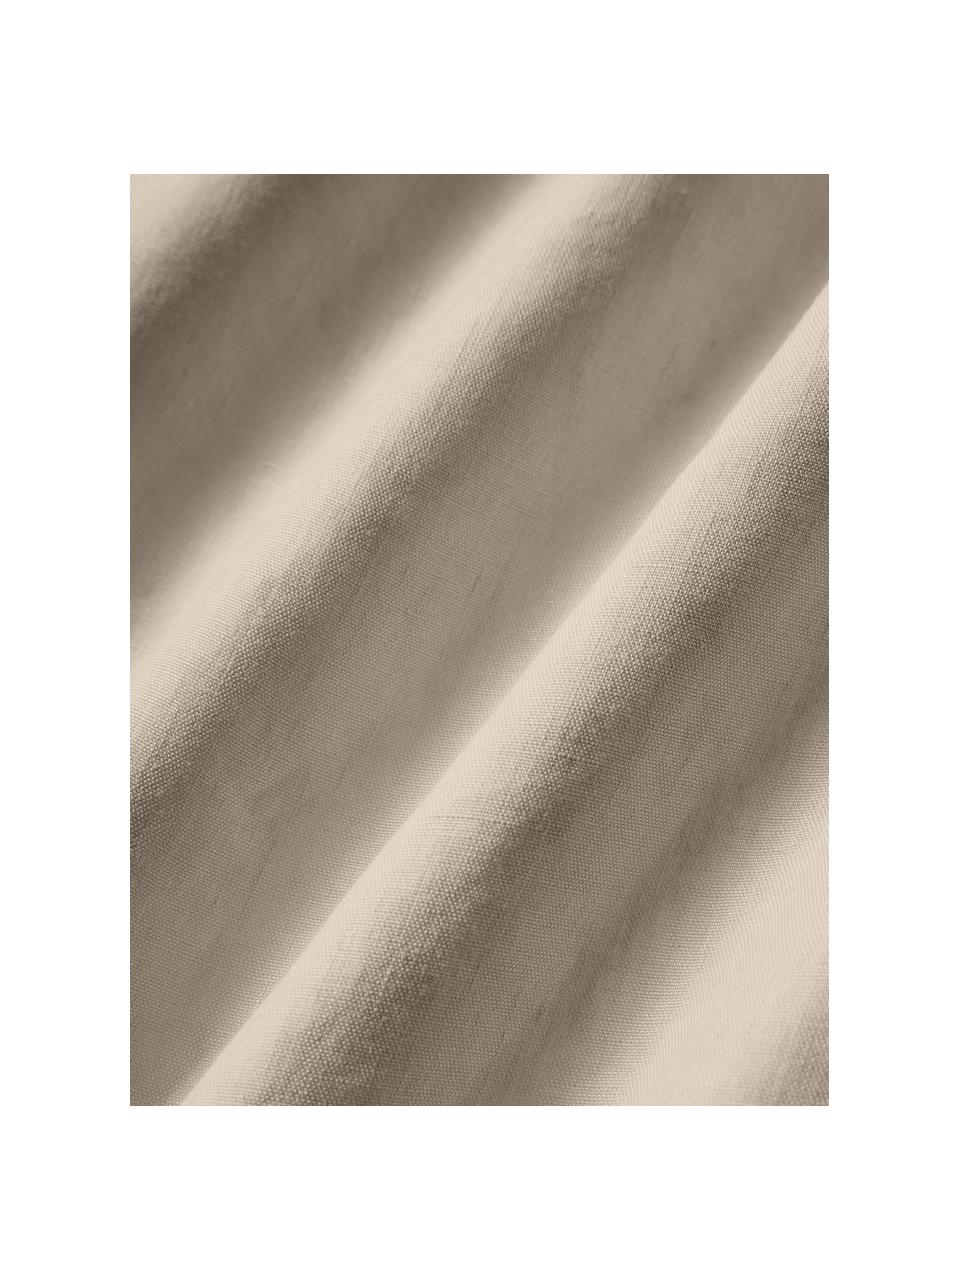 Lenzuola in lino lavato Airy, 100% lino, certificato lino europeo
Densità dei fili 165 TC, qualità Standard

Il lino è una fibra naturale caratterizzata da traspirabilità, resistenza e morbidezza. Il lino è un materiale rinfrescante e assorbente che assorbe e rilascia rapidamente l'umidità, rendendolo ideale per le temperature calde.

Il materiale utilizzato in questo prodotto è testato per le sostanze nocive e certificato secondo lo STANDARD 100 by OEKO-TEX®, 137, CITEVE., Beige, Larg. 240 x Lung. 280 cm